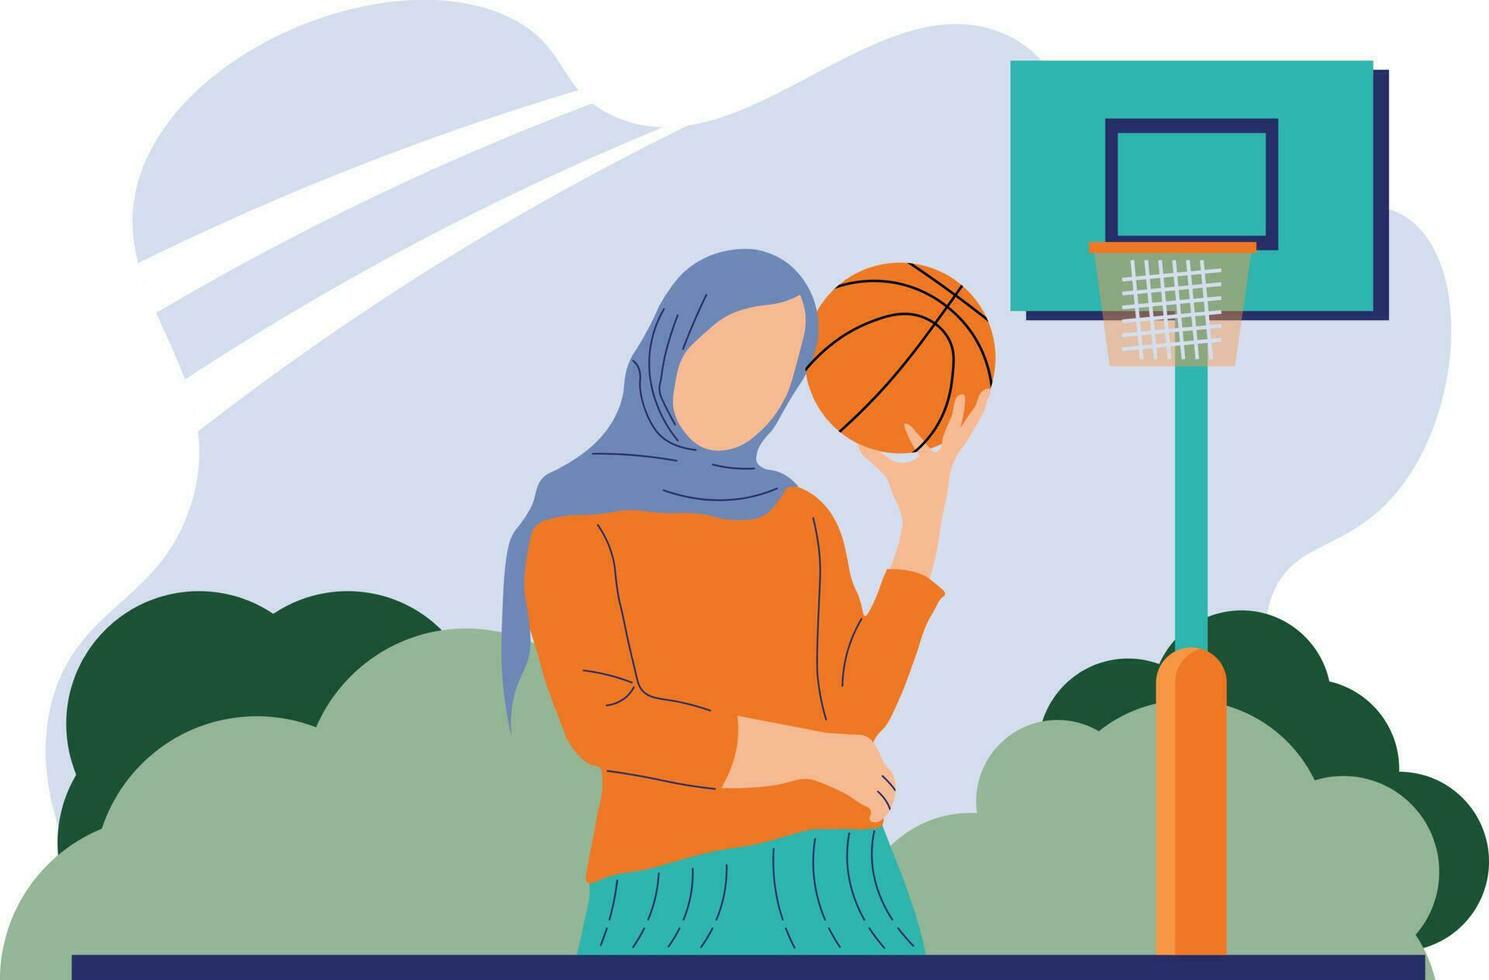 muslim kvinna basketboll sporter platt karaktär vektor